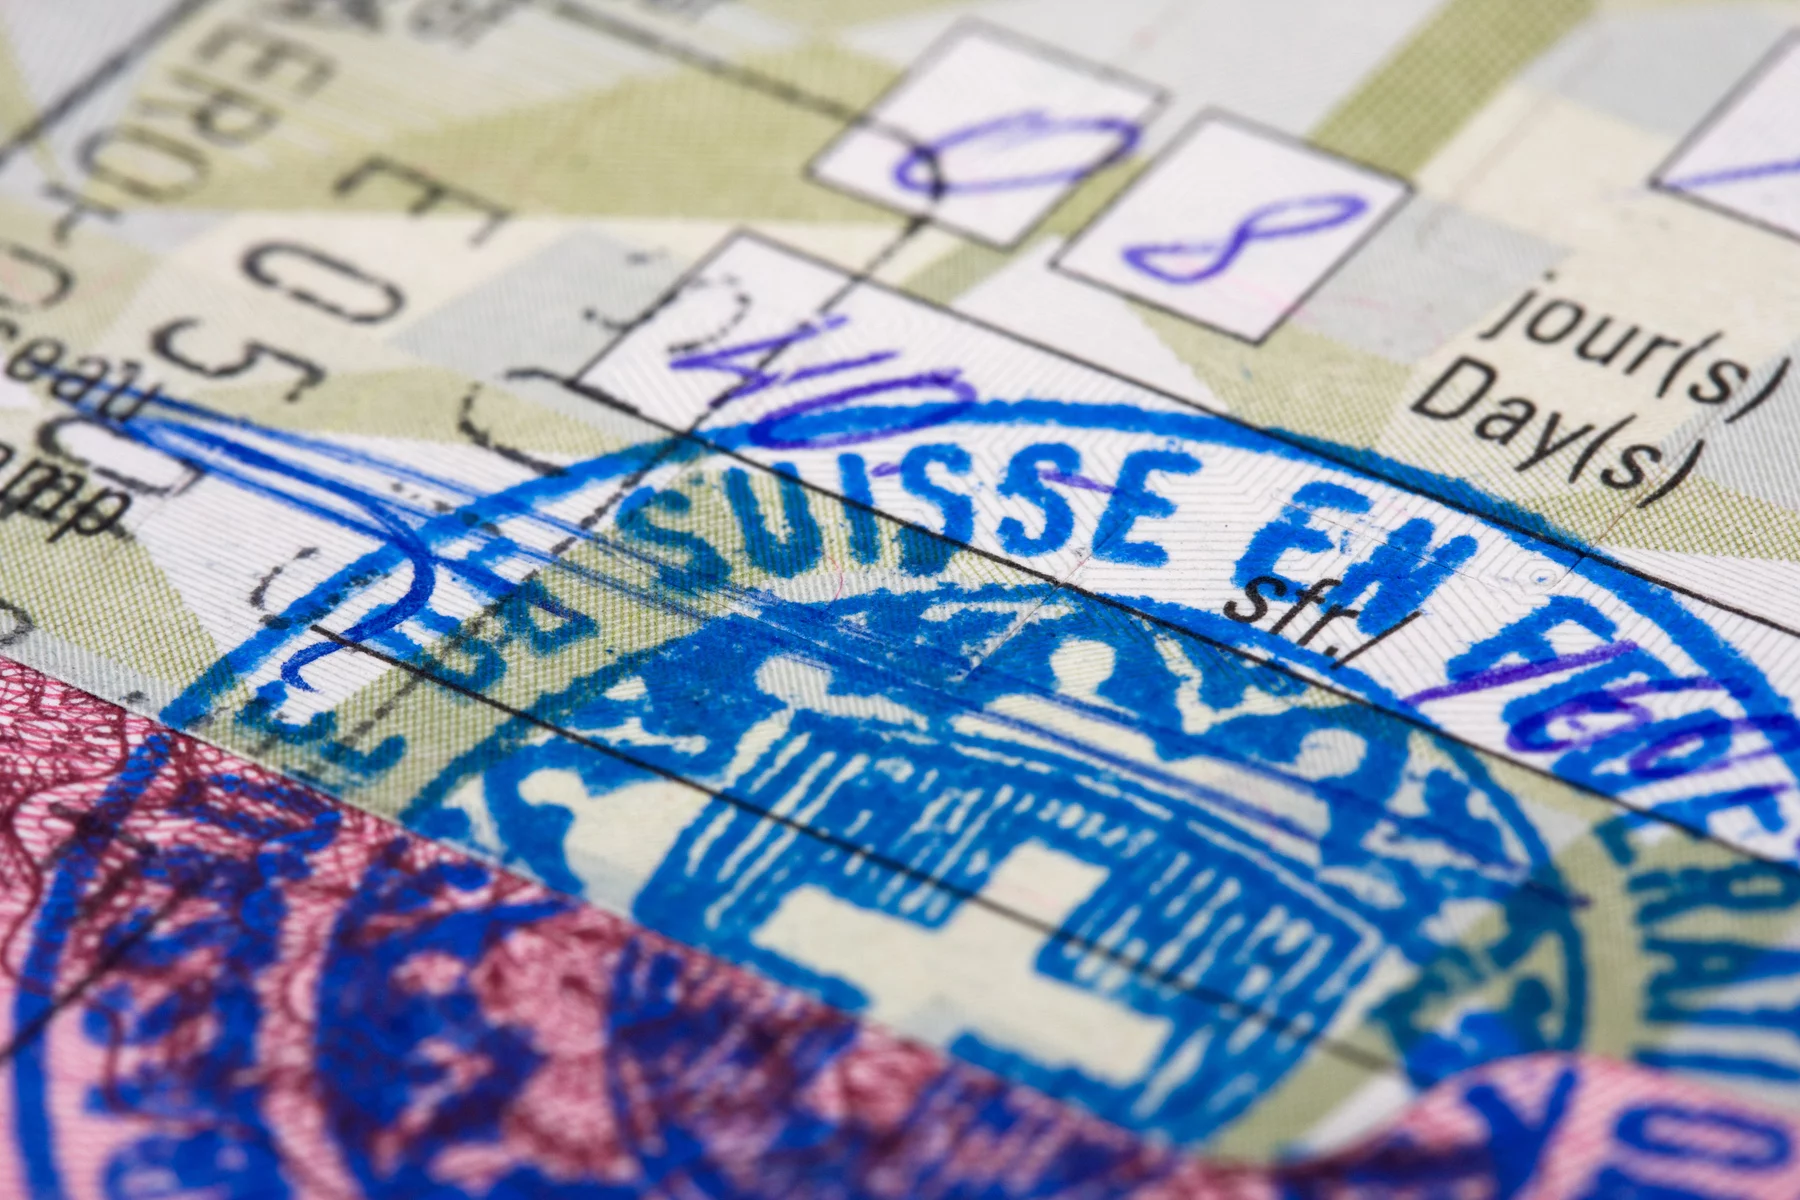 Switzerland work visa stamp